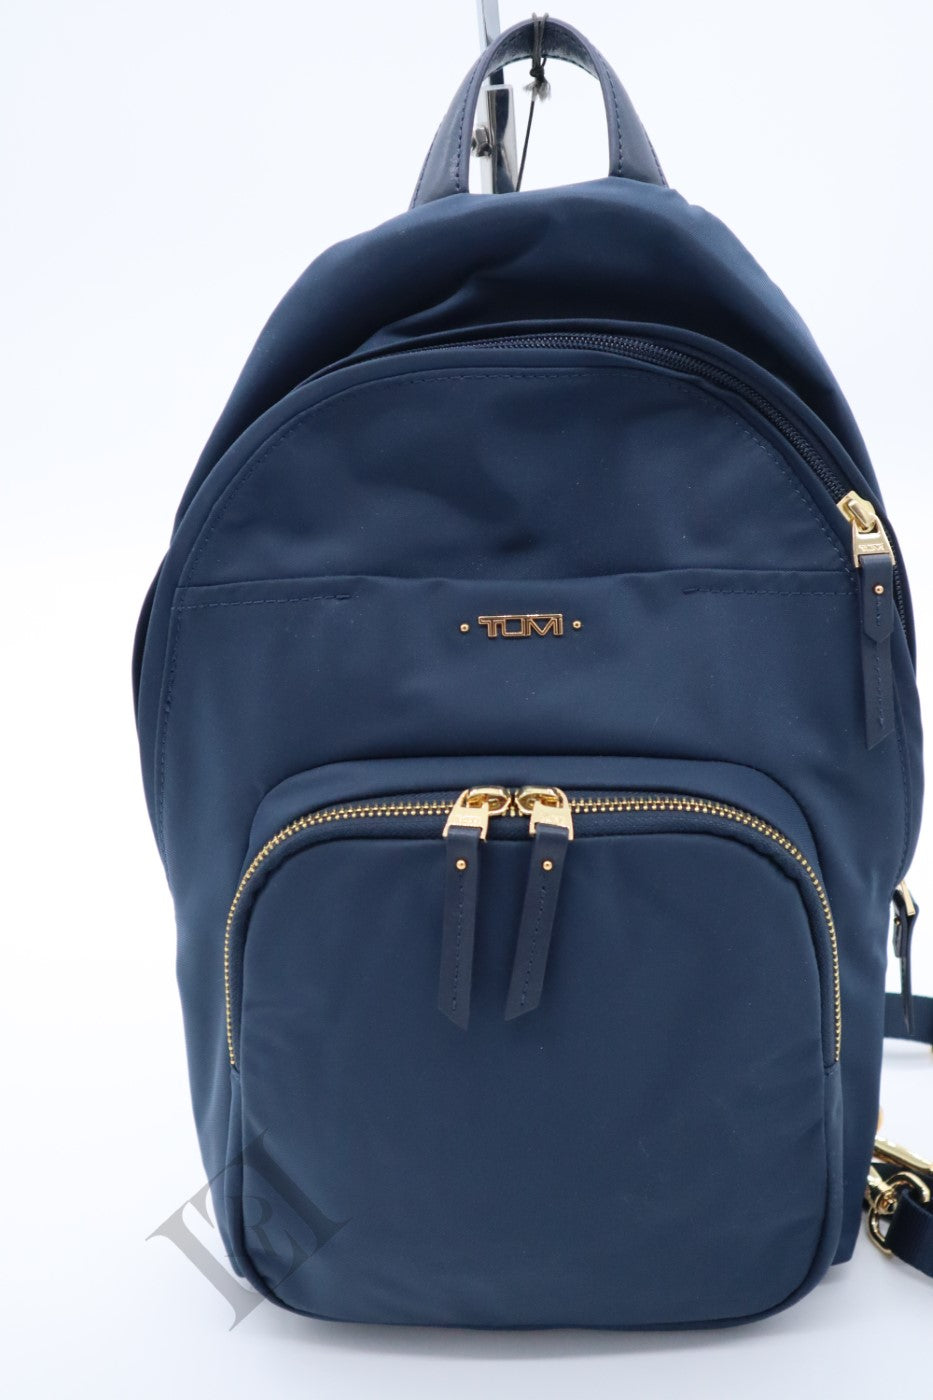 Tumi Naomi Convertible Backpack/Sling Bag